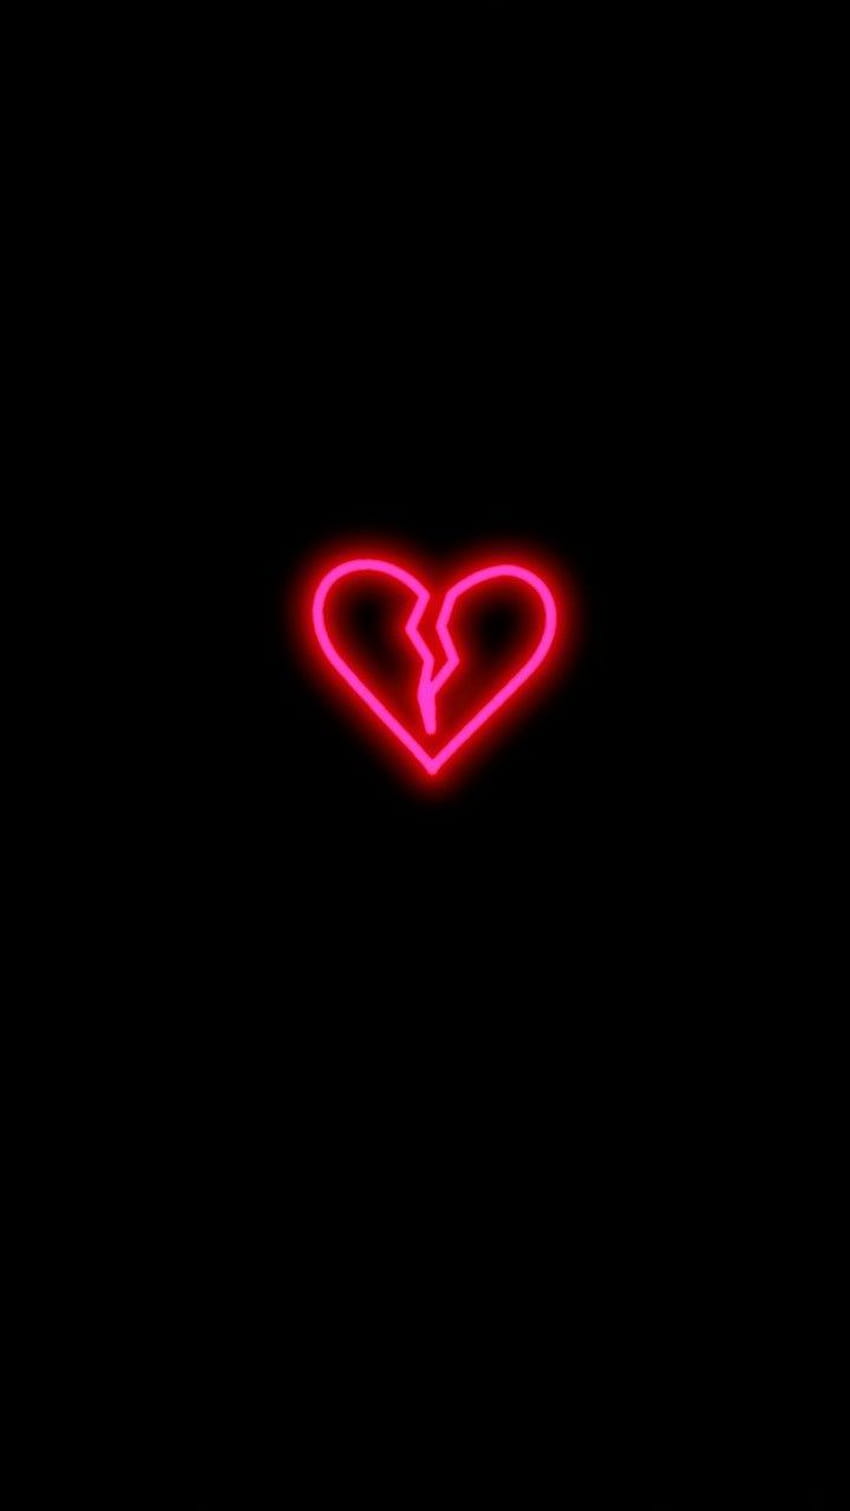 Hình nền Neon trái tim sẽ làm cho trái tim bạn thổn thức với đường neon lung linh lấp lánh. Với những gam màu neon đầy mê hoặc và tình cảm, bạn sẽ cảm thấy như một trái tim đang phát sáng trong đêm. Hãy cùng chiêm ngưỡng và tận hưởng trải nghiệm thơ mộng này.